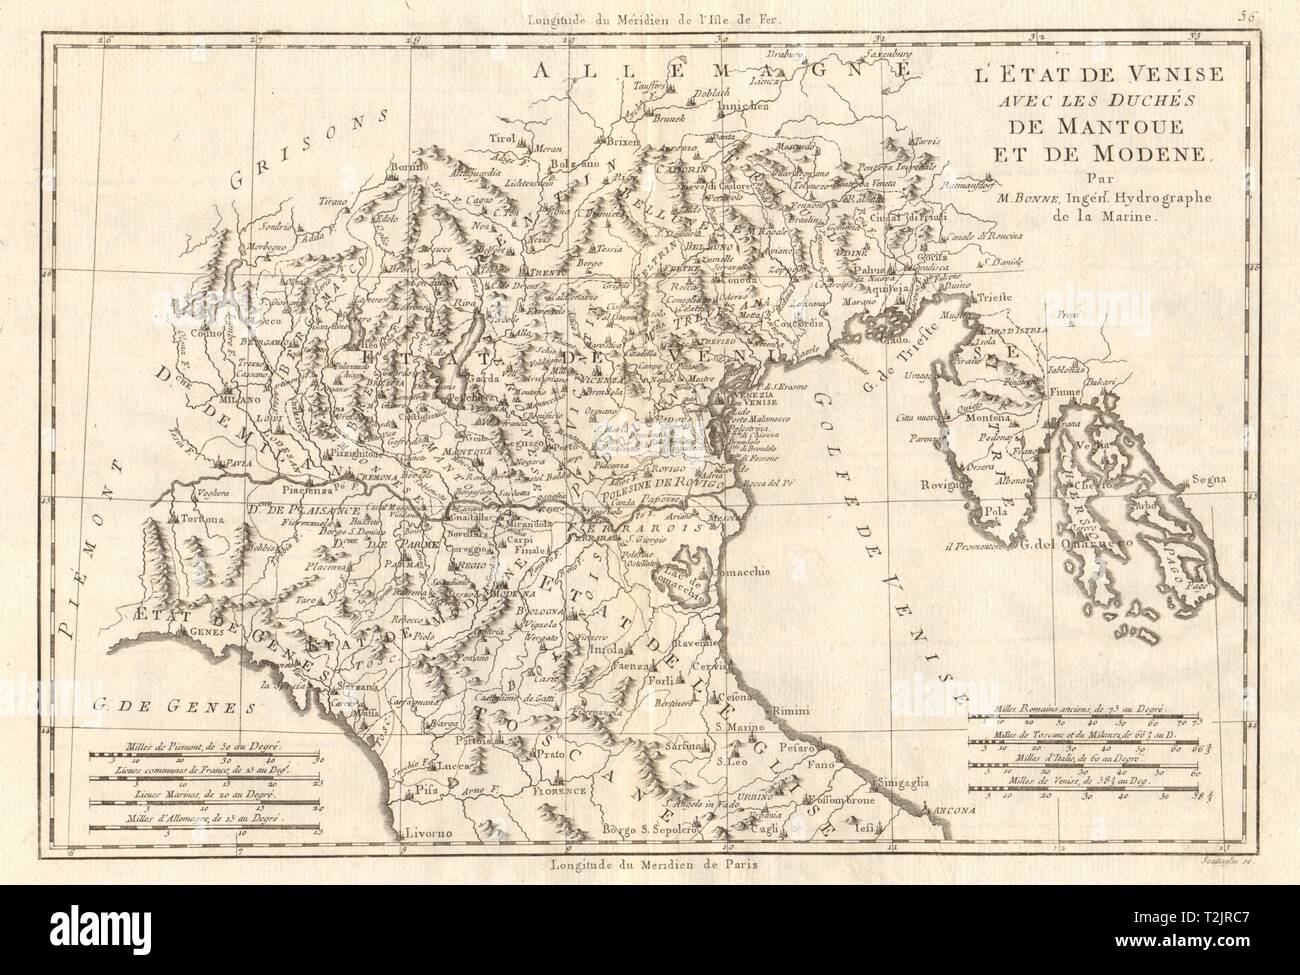 L'État de Venise, avec les duchés de Mantoue et de Modene. L'Italie. BONNE CARTE 1789 Banque D'Images